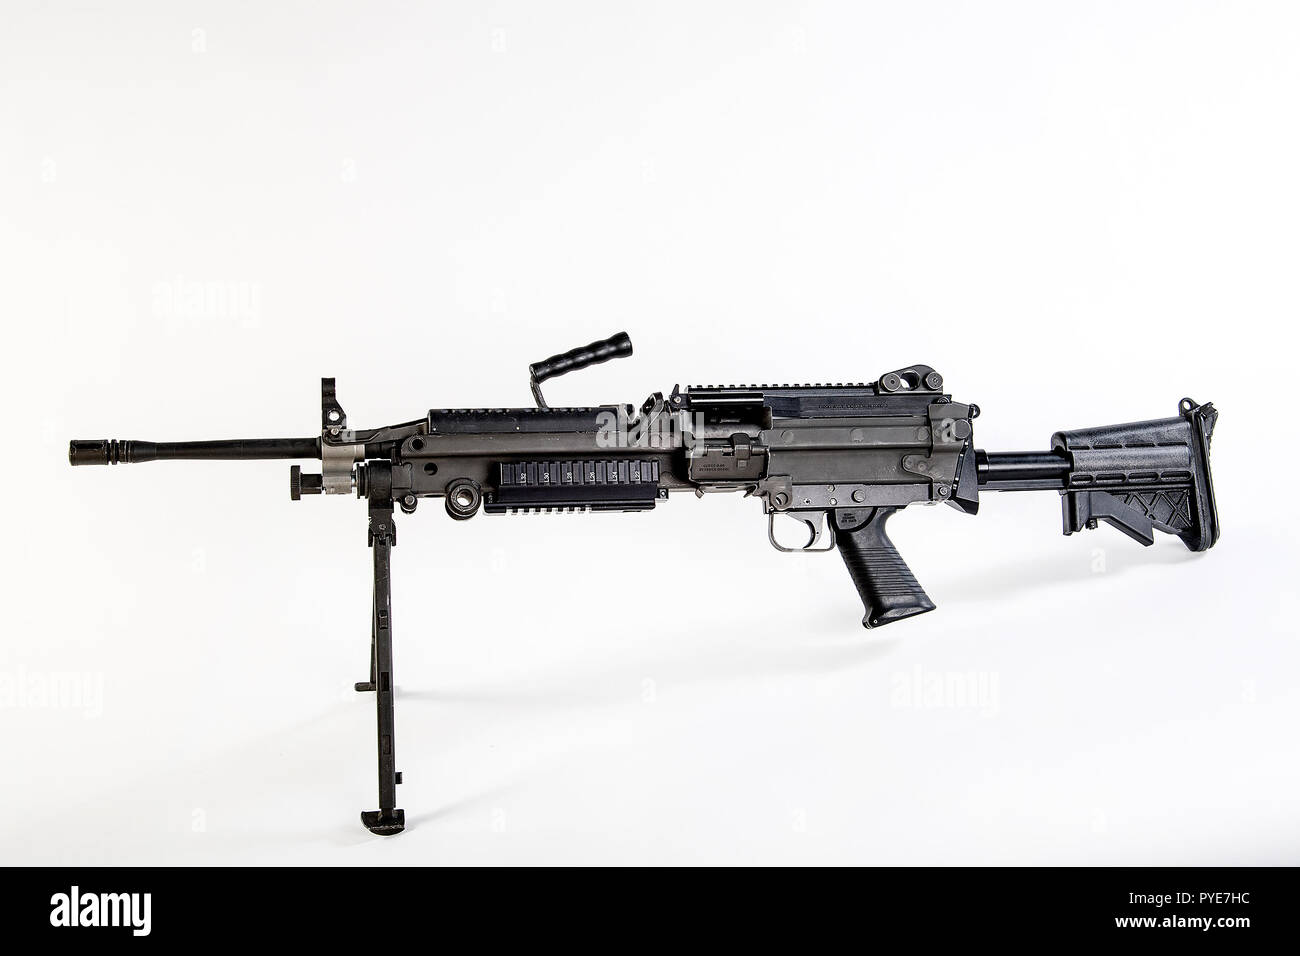 Die M249 Light Machine Gun, früher der M249 Squad Automatic Weapon (SAW) und formell als Light Machine Gun, 5,56 mm, M249 Geschrieben bezeichnet, ist die Amerikanische Adaption der belgischen FN Minimi, einem leichten Maschinengewehr hergestellt von der belgischen Firma FN Herstal (FN). Die Waffe wurde 1984 nach beurteilt werden am effektivsten in einer Reihe von Kandidatenländern Waffen des fehlenden automatischen feuerkraft in kleine Einheiten zu Adresse eingeführt. Der M249 bietet Infanterie Trupps mit der hohen Rate der Brand eines Maschinengewehrs mit Genauigkeit und Portabilität von einem Gewehr kombiniert. Der M249 ist Gas o Stockfoto